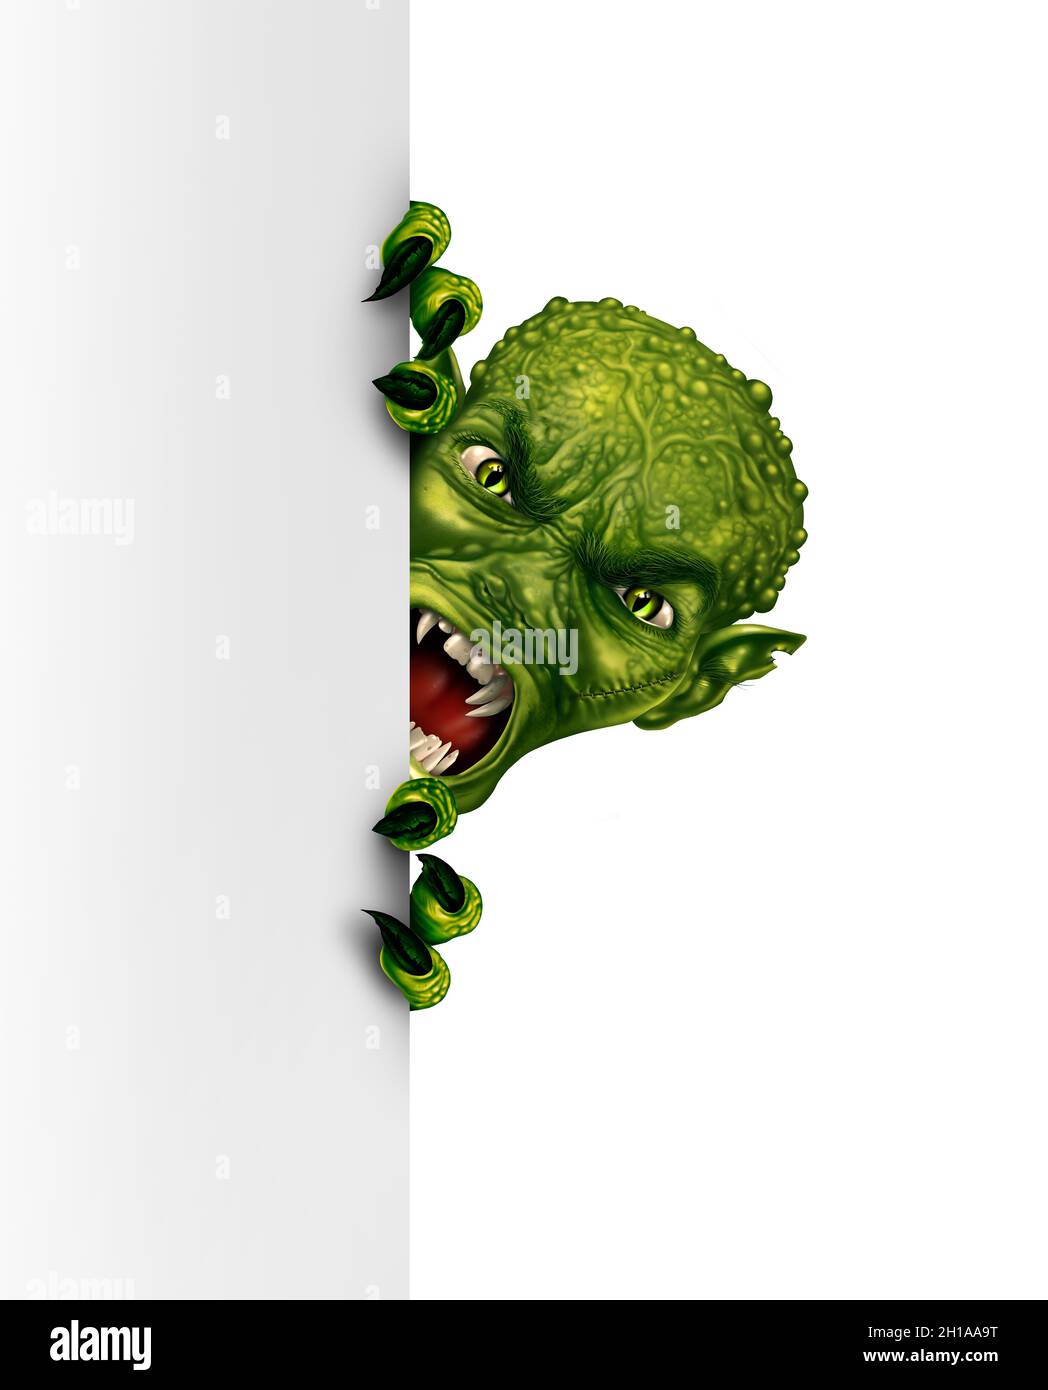 Zombie o alieno spazio che si aggira dietro un segno bianco bianco bianco verticale vuoto come un mostro verde arrabbiato creepy nascondendosi e piangendo dietro un cartellone come uno spooky. Foto Stock